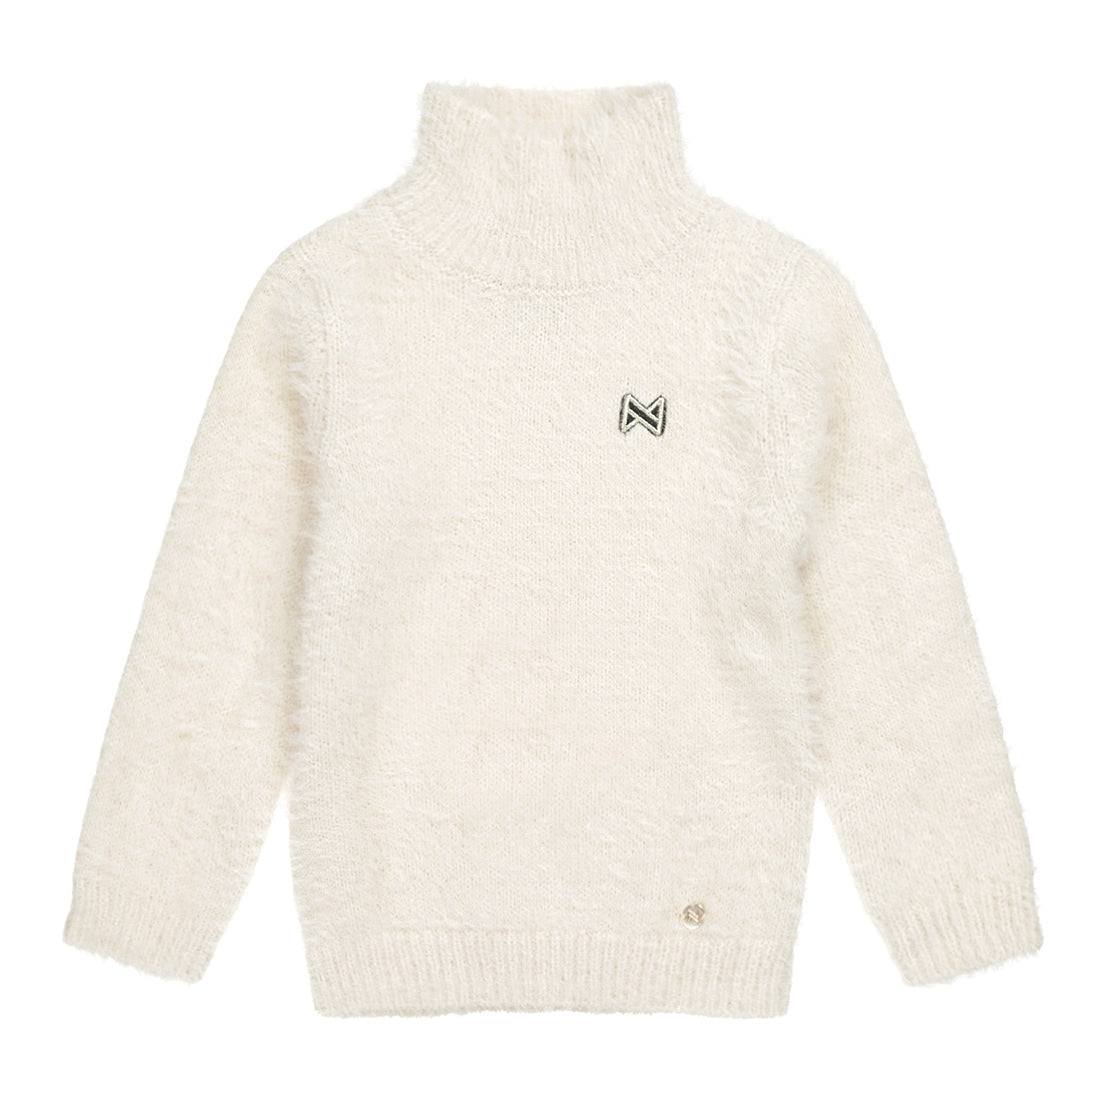 Meisjes Sweater ls with rollneck van Koko Noko in de kleur  Off white in maat 128.